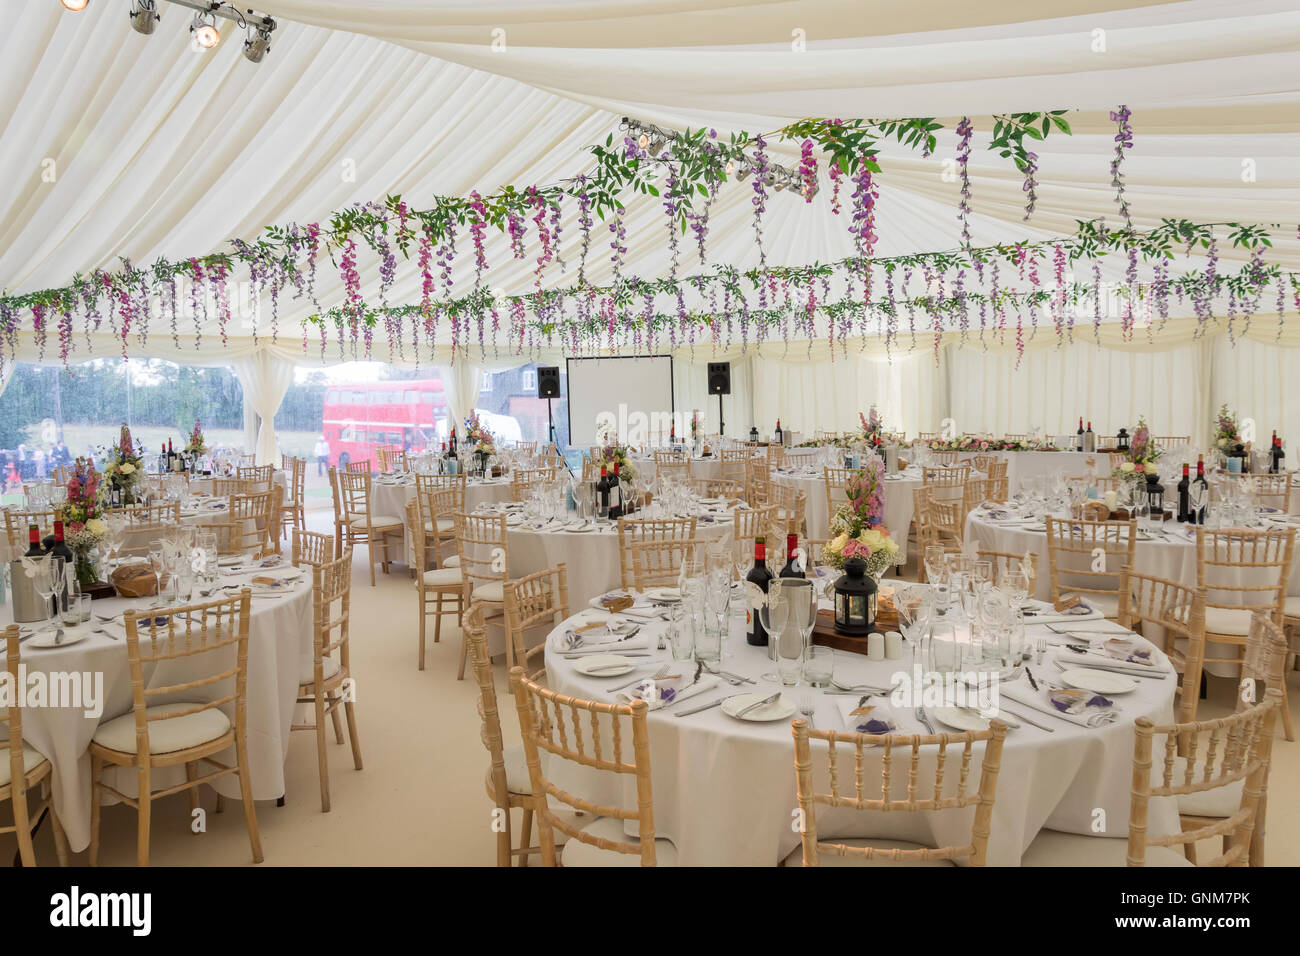 Chapiteau de mariage prêts pour les invités du mariage, Preston Bissett, Buckinghamshire, Angleterre, Royaume-Uni Banque D'Images